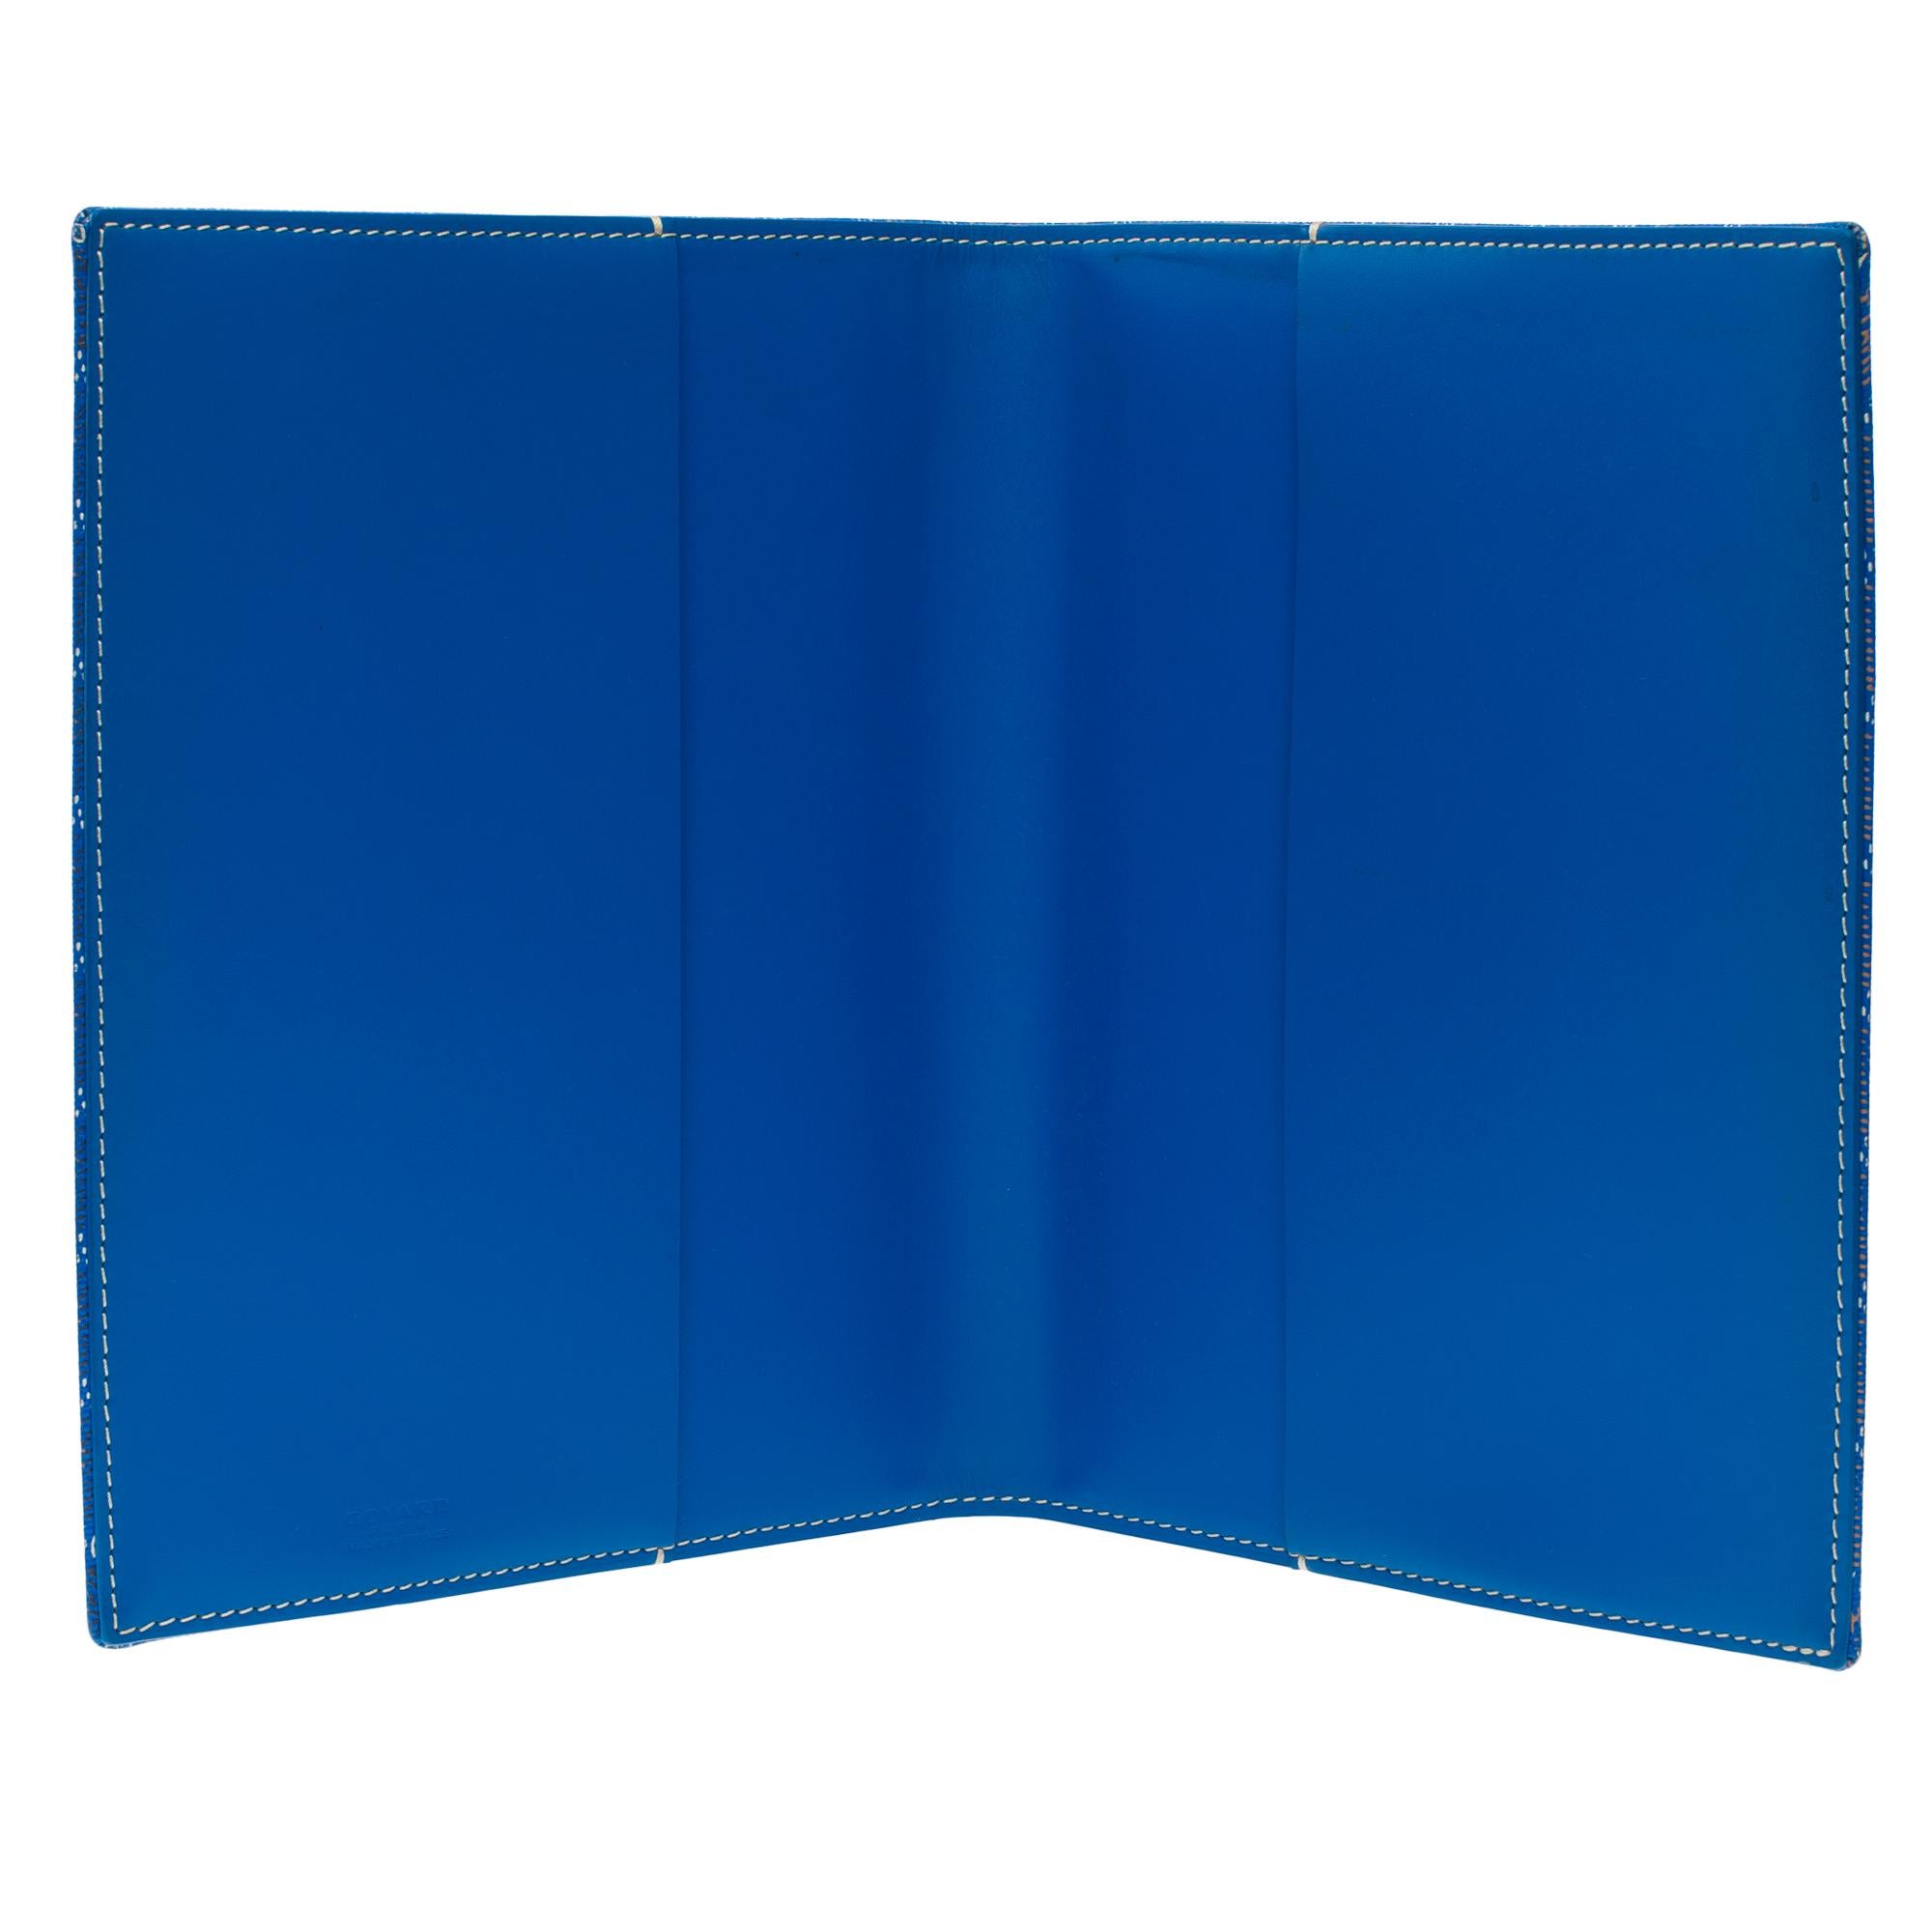 Gorgeous Goyard Agenda Cover Castiglione in blue Goyardine canvas For Sale 4